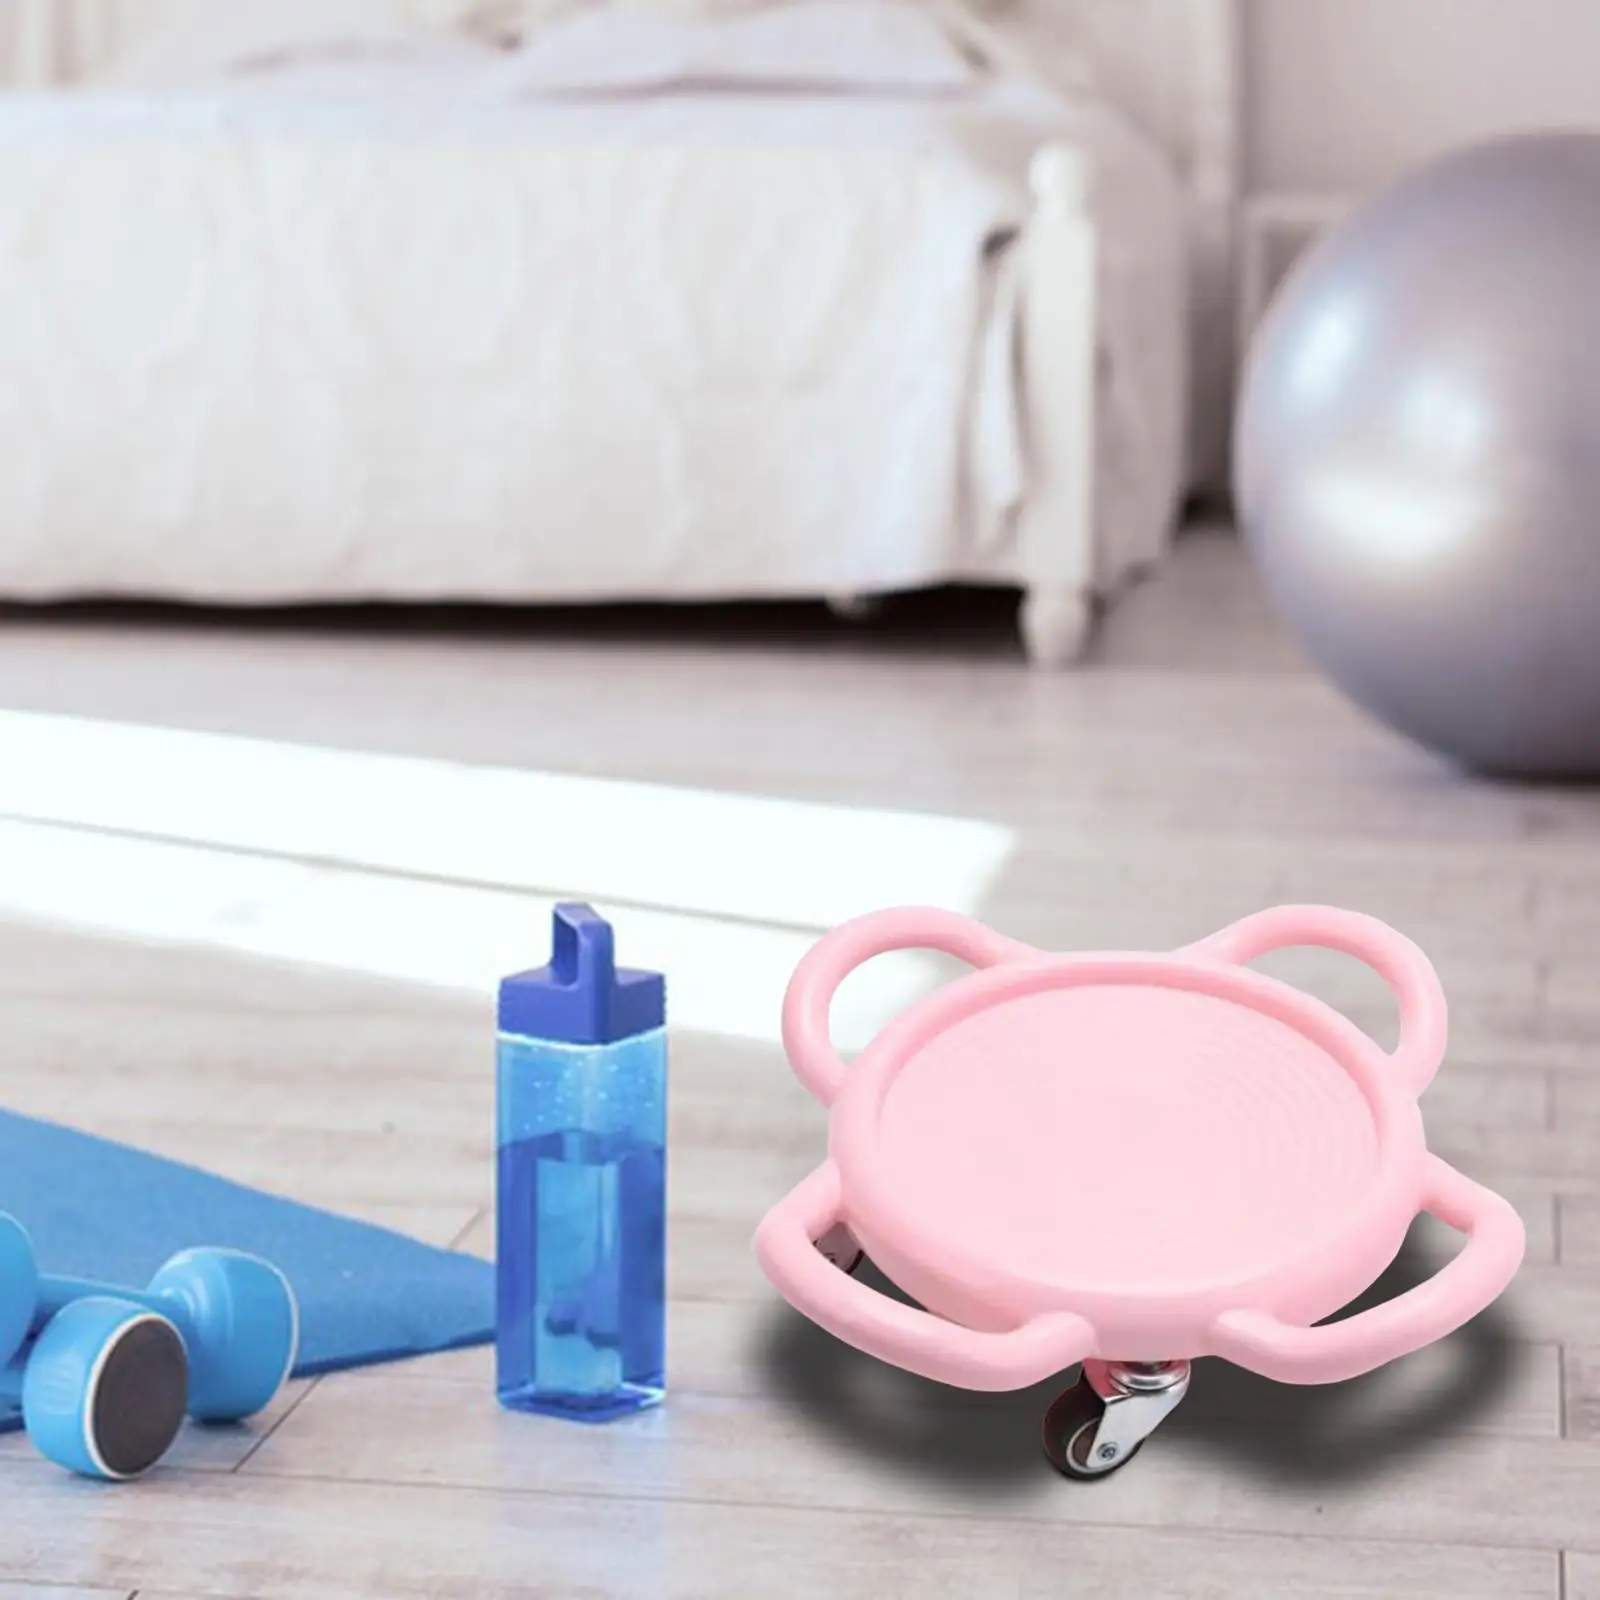 Four Wheel Roller Sliding Equipment fitness Sport for Home Gym Fitness